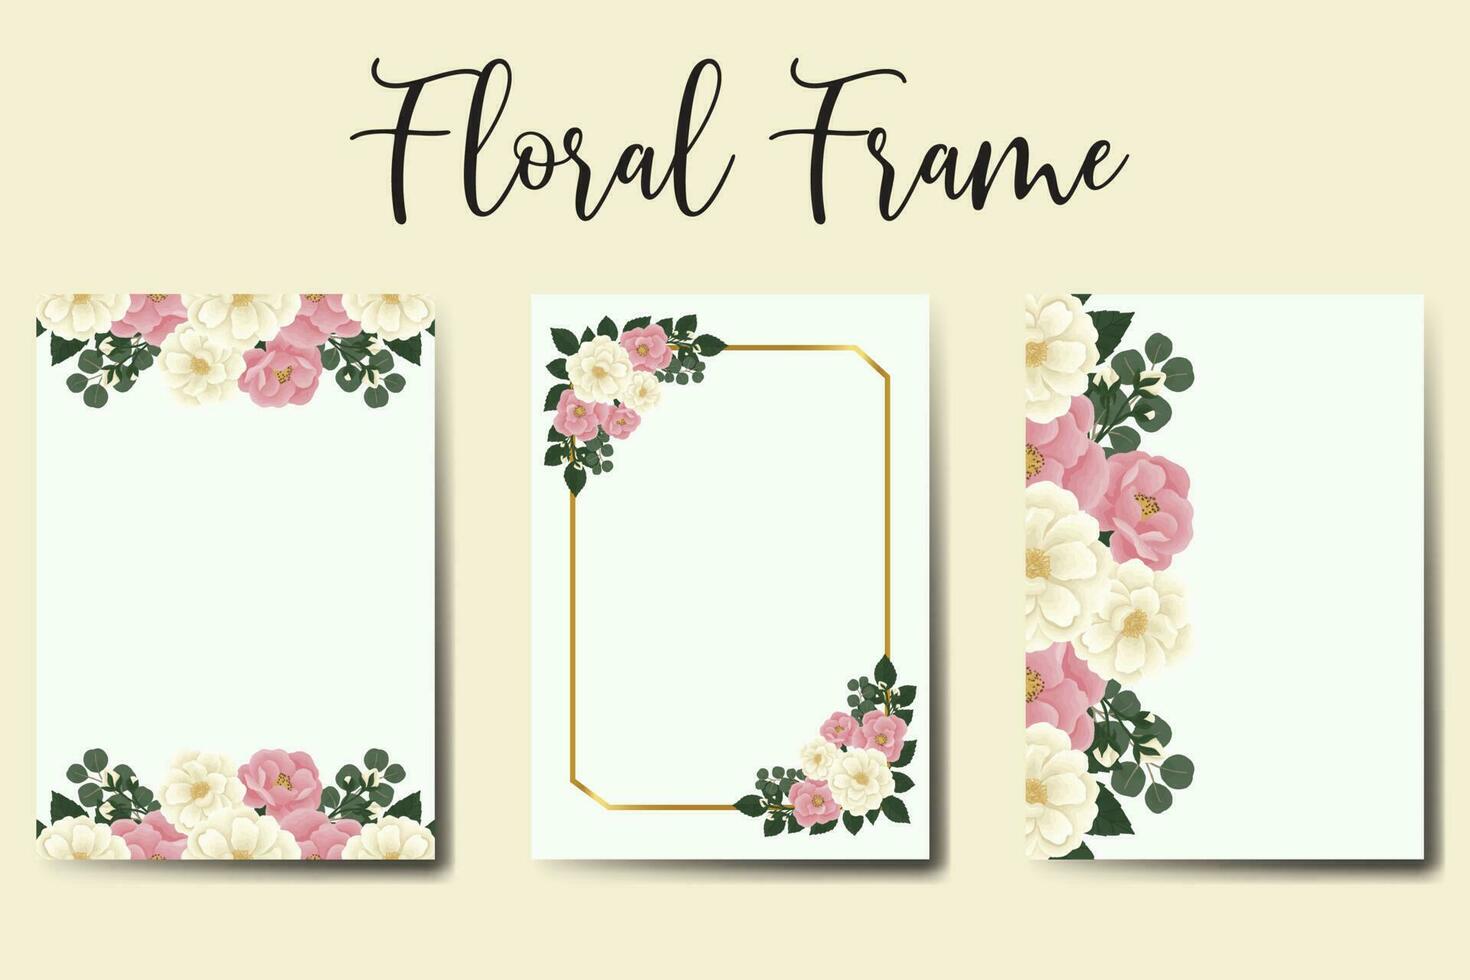 Boda invitación marco colocar, floral acuarela digital mano dibujado mini Rosa flor diseño invitación tarjeta modelo vector